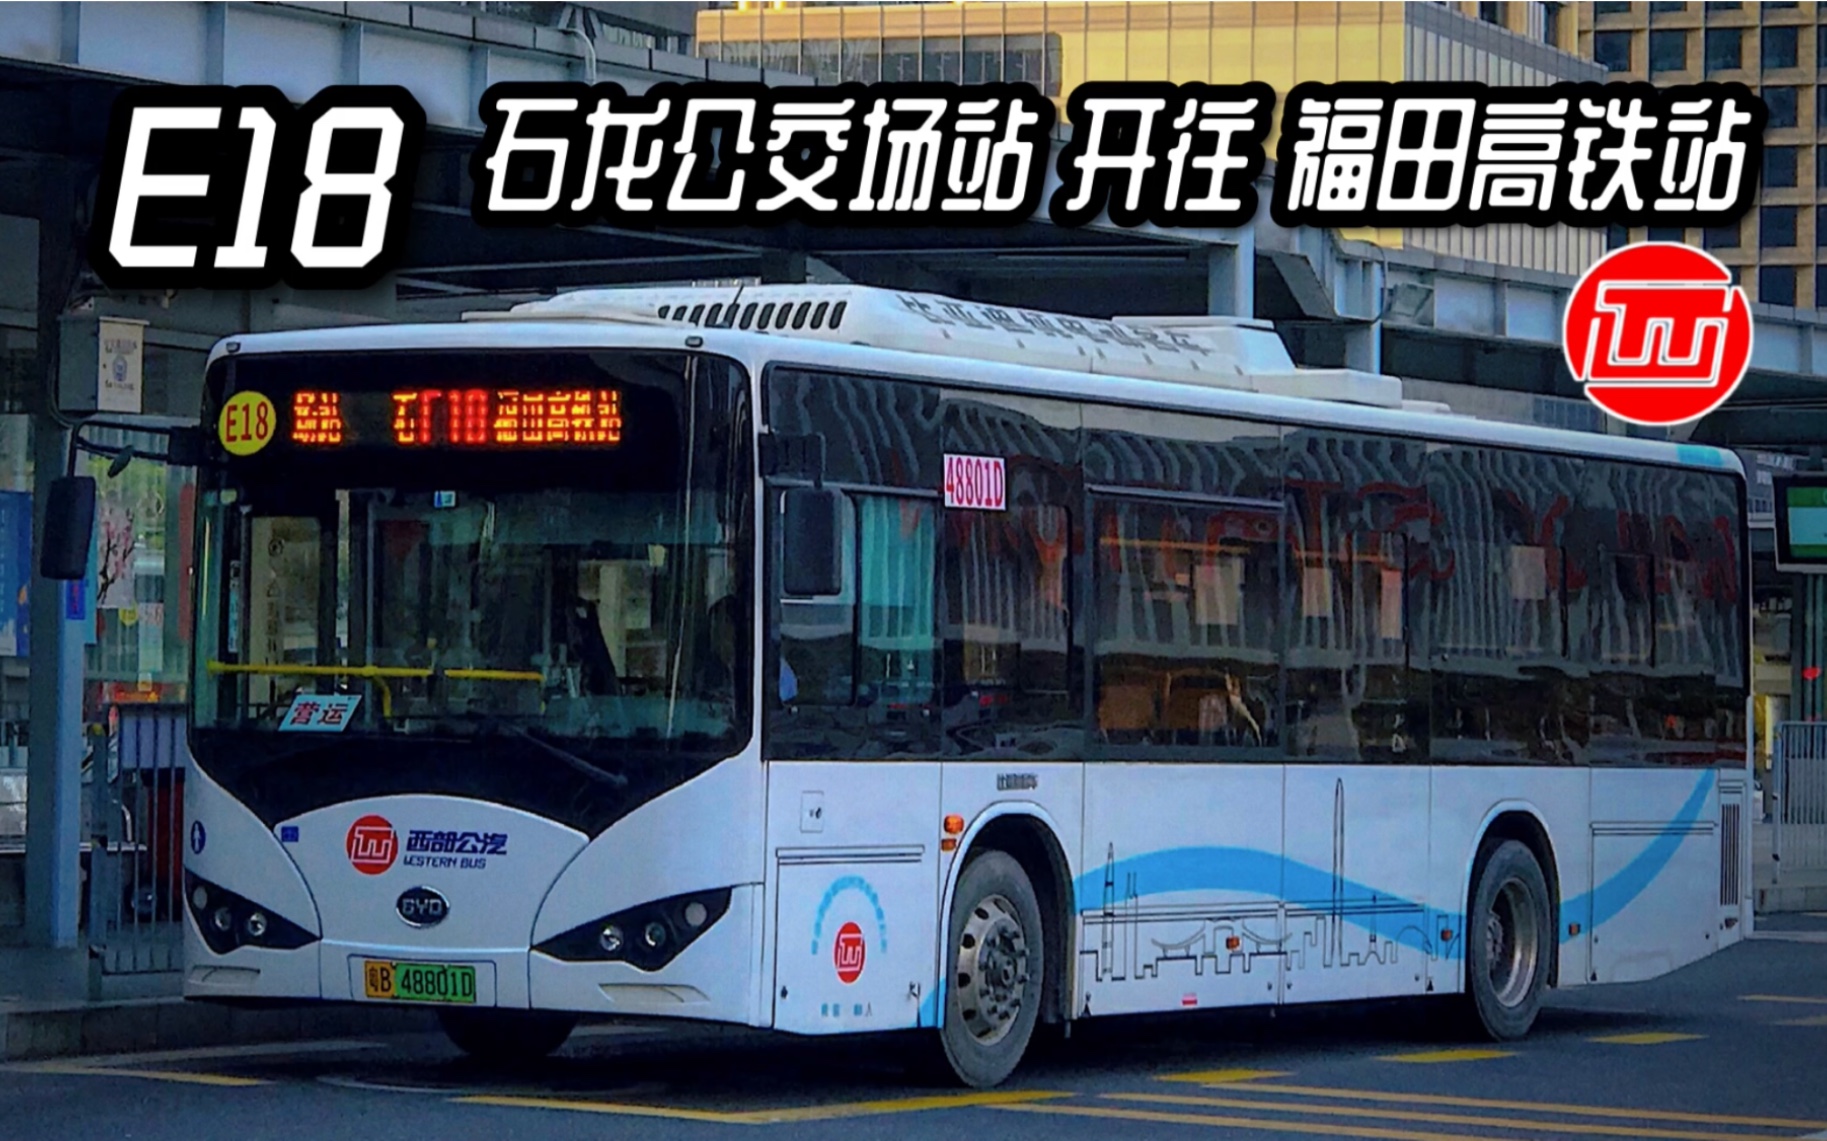 深圳西部公交图片